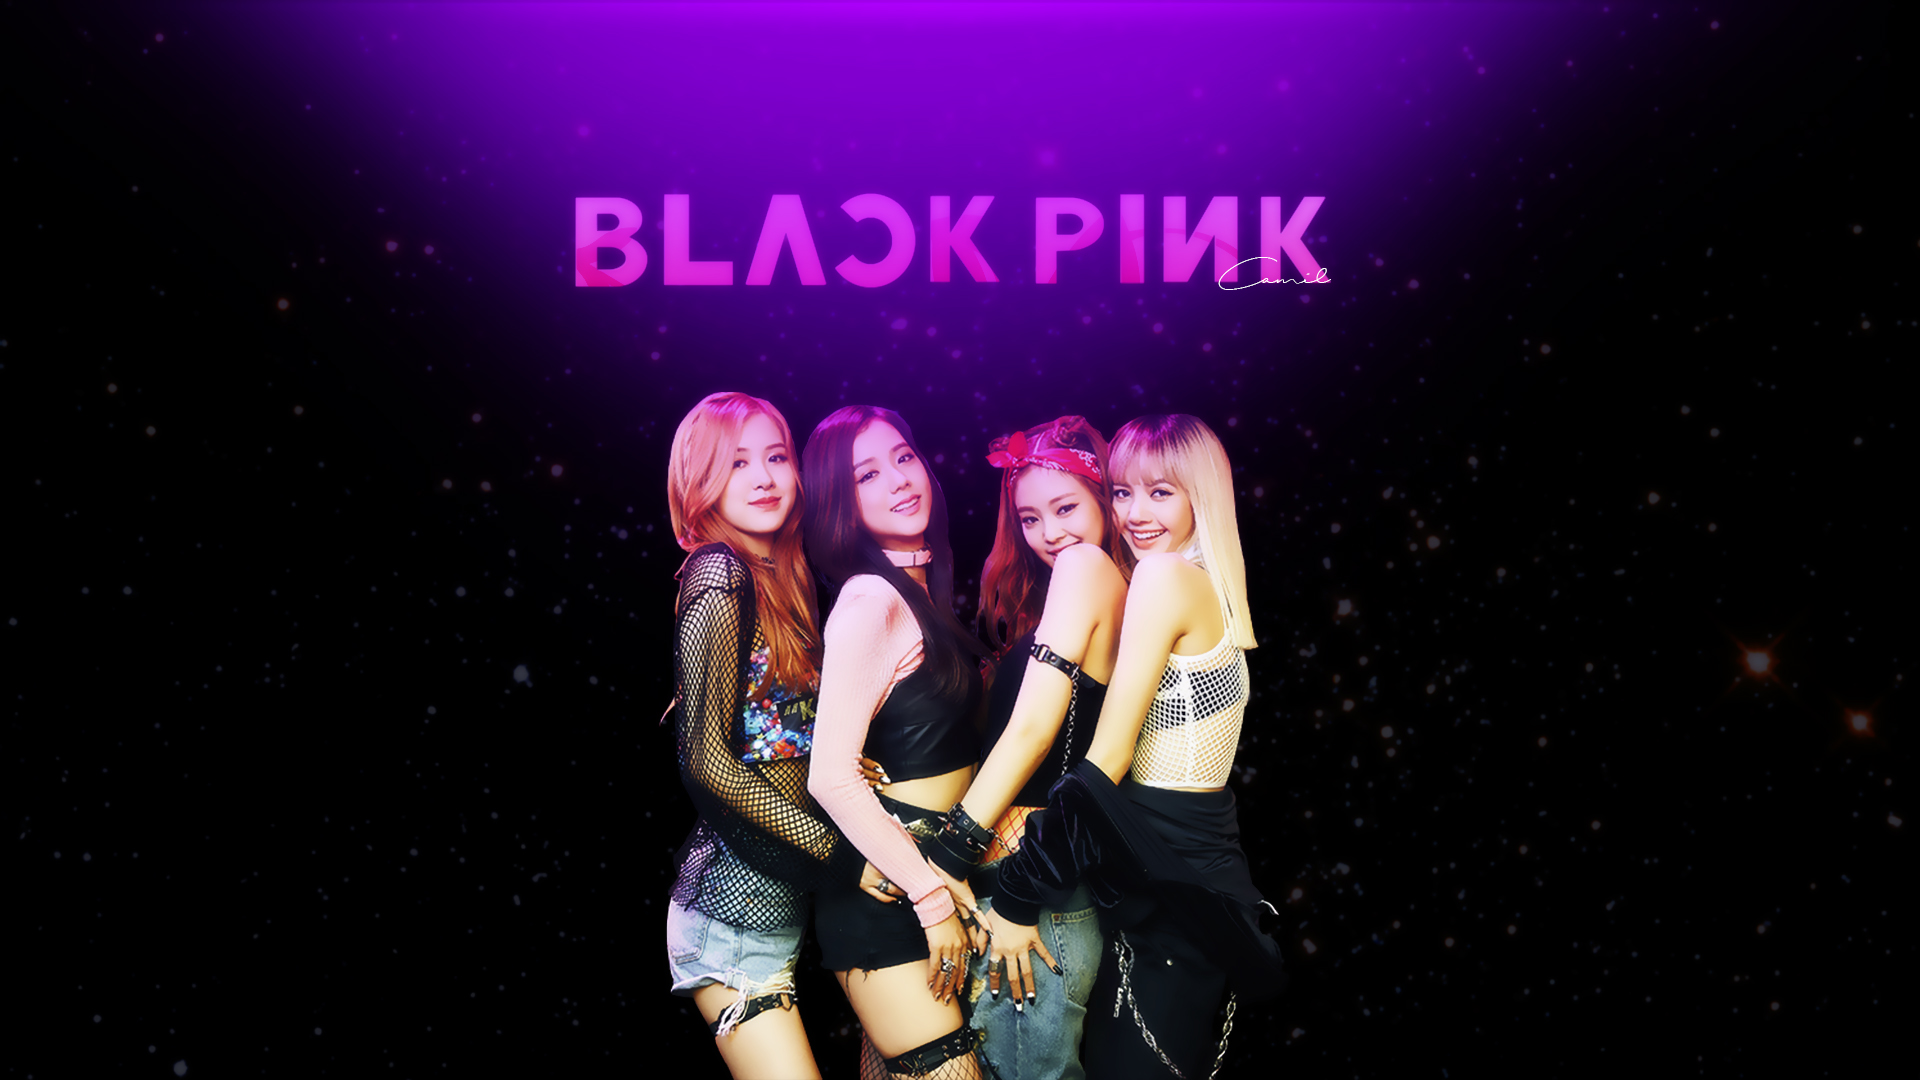 Blackpink Wallpaper 4K PUBG MOBILE Pink background 3105